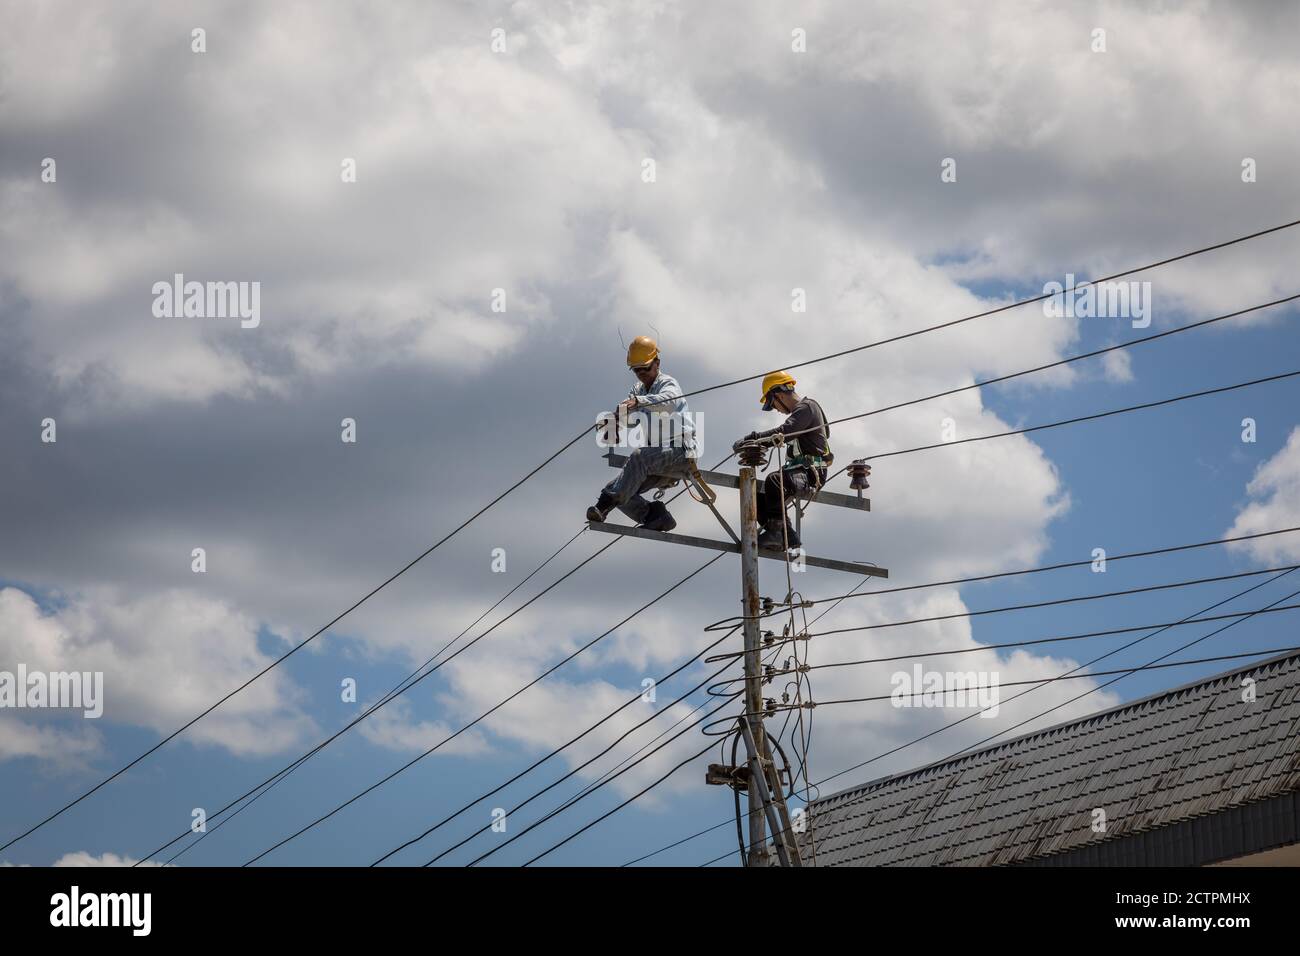 Tenhilan, Sabah, Malesia: Due linemen che fanno lavori di riparazione su un pilone ad alta tensione a Tengilan Foto Stock